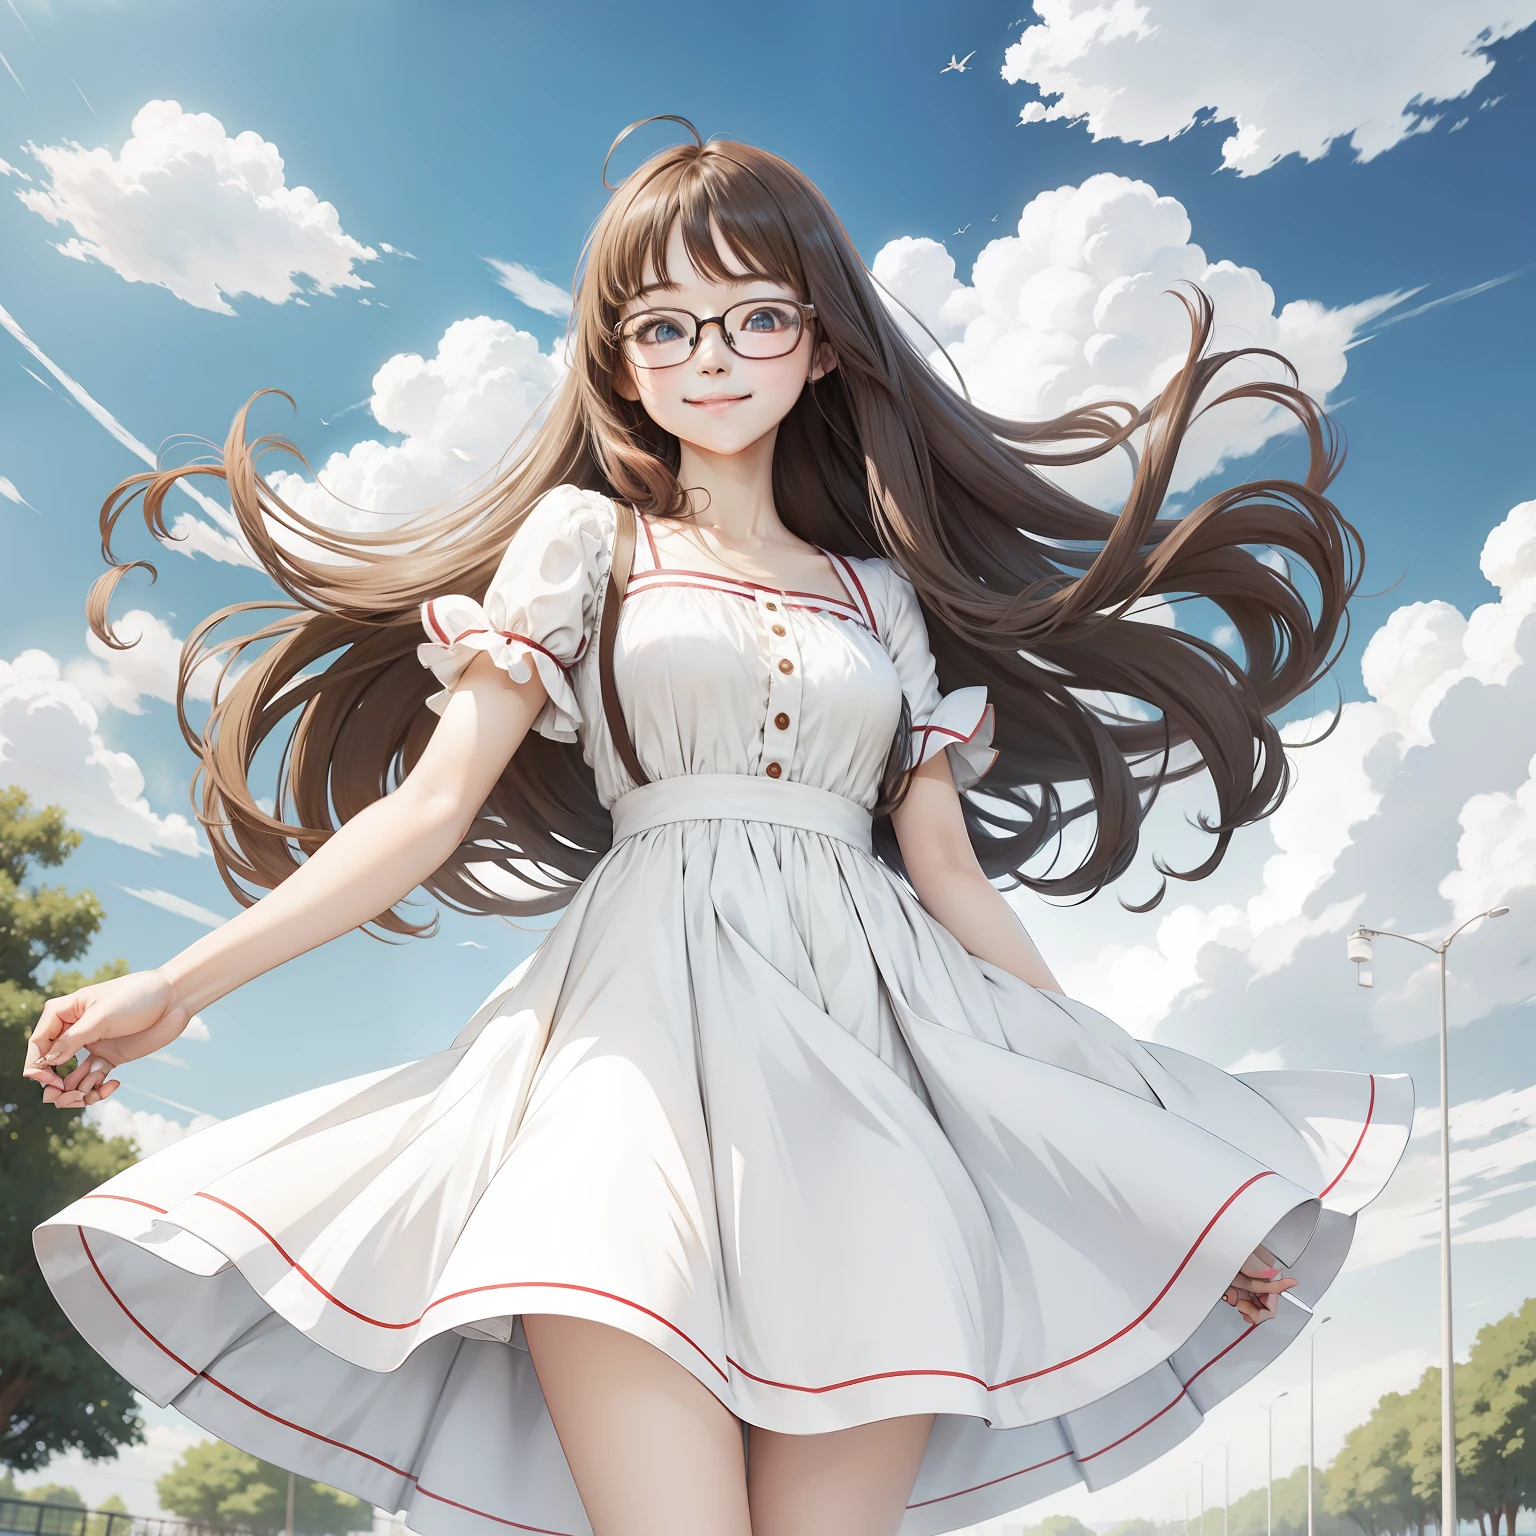 Anime girl, long hair, glasses, teen, cute, using white dress, wind, park, smile